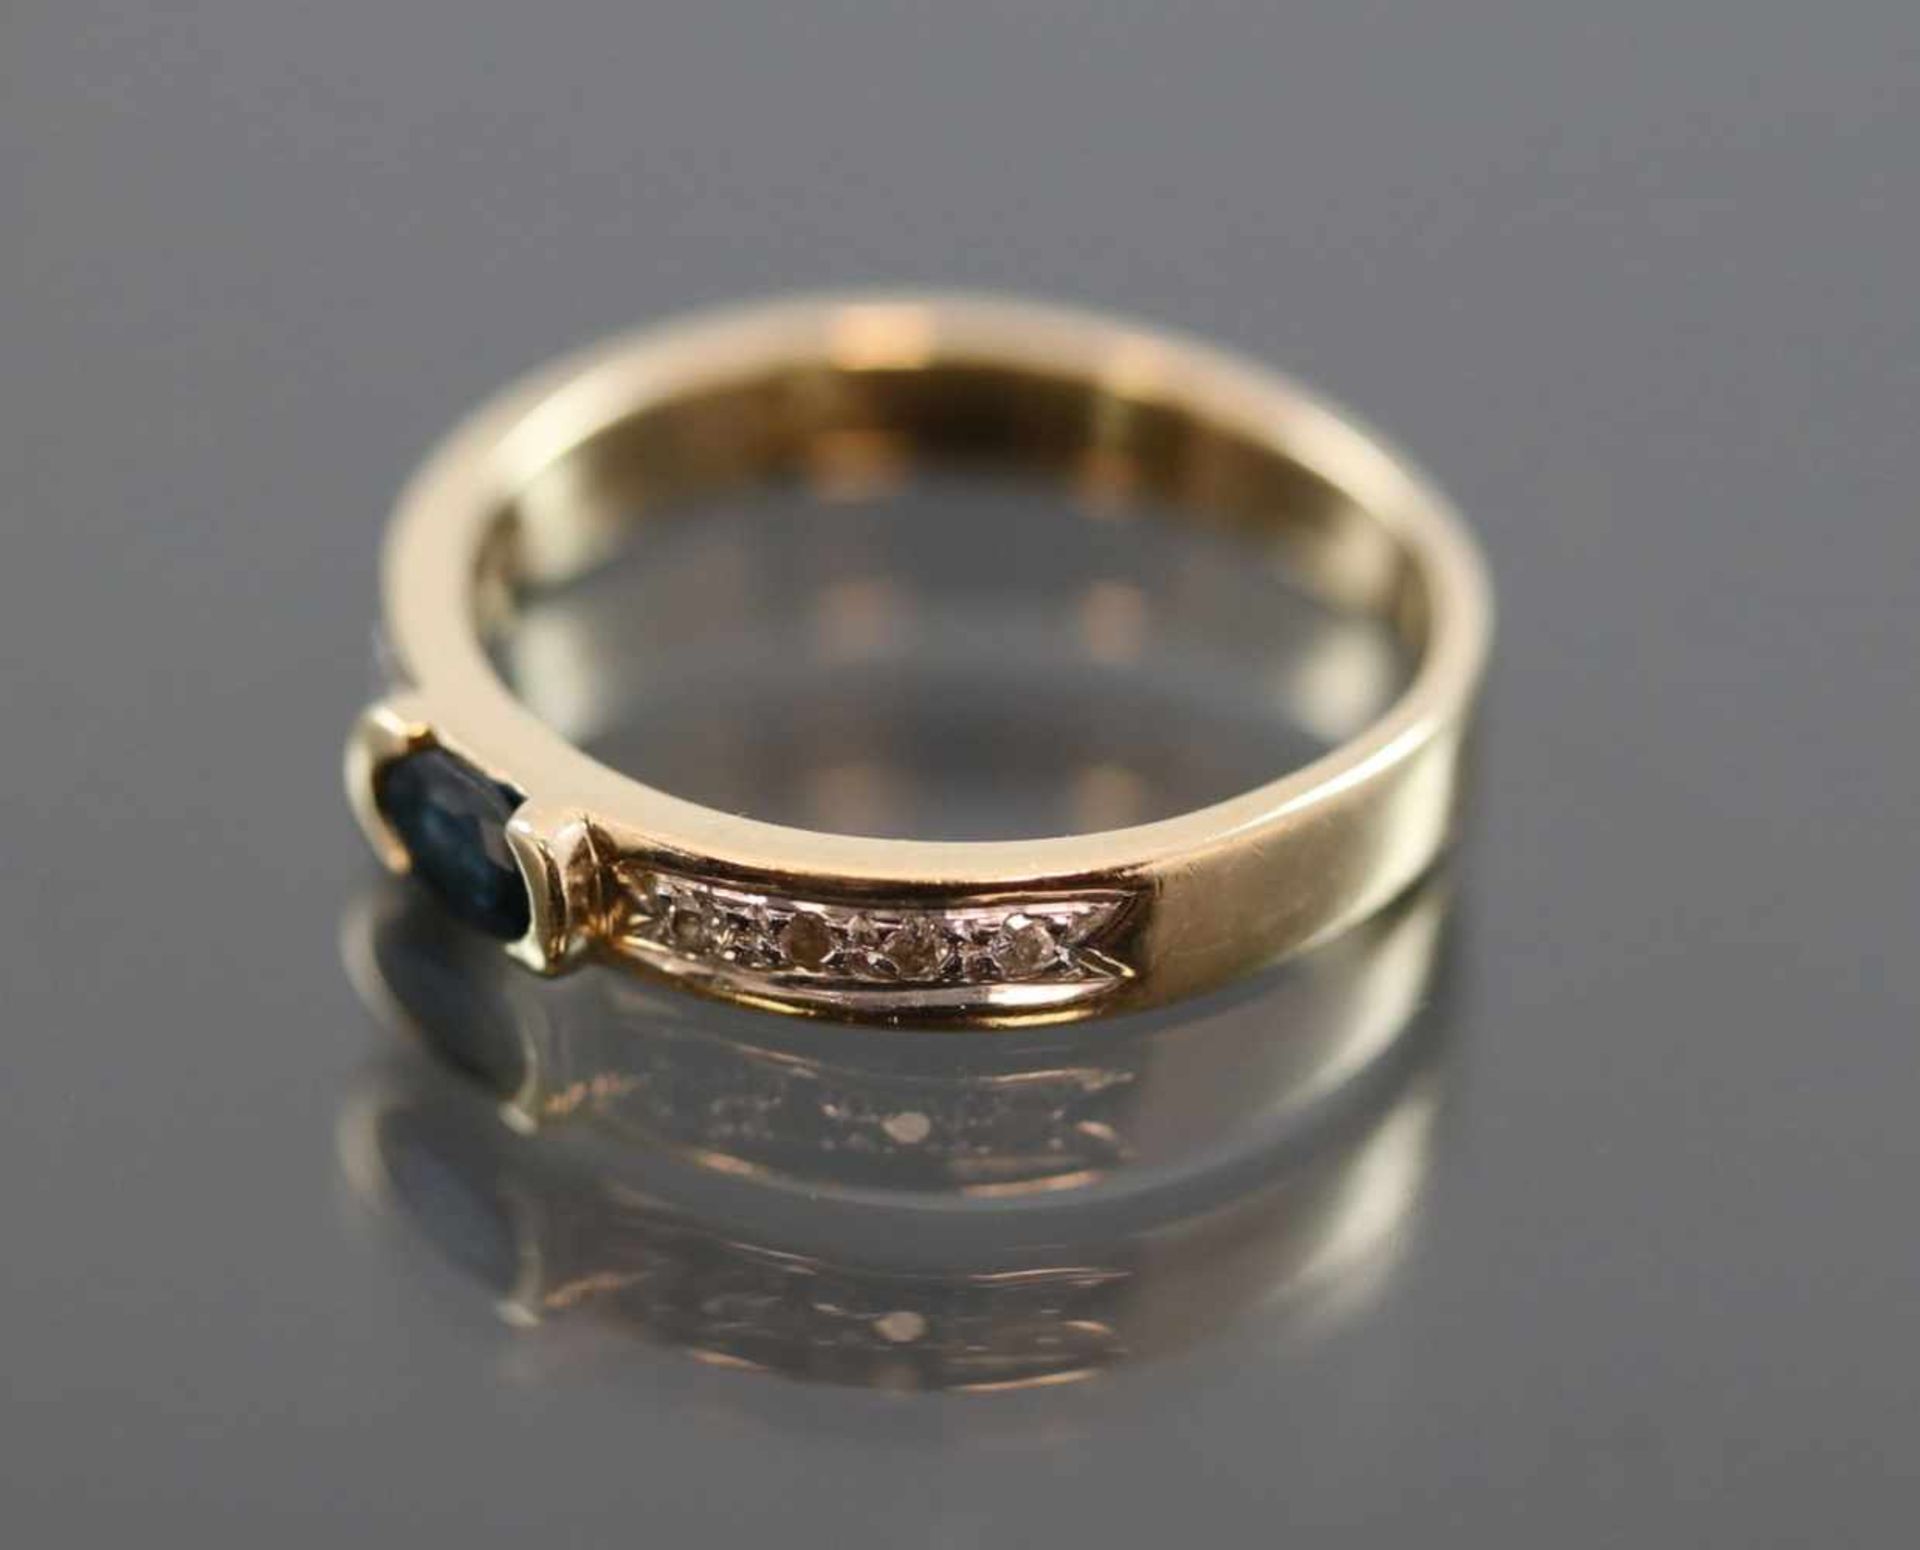 Saphir-Brillant-Ring, 585 Gelbgold2,9 Gramm 8 Brillanten, 0,08 ct., w/si. Ringgröße: - Bild 2 aus 3